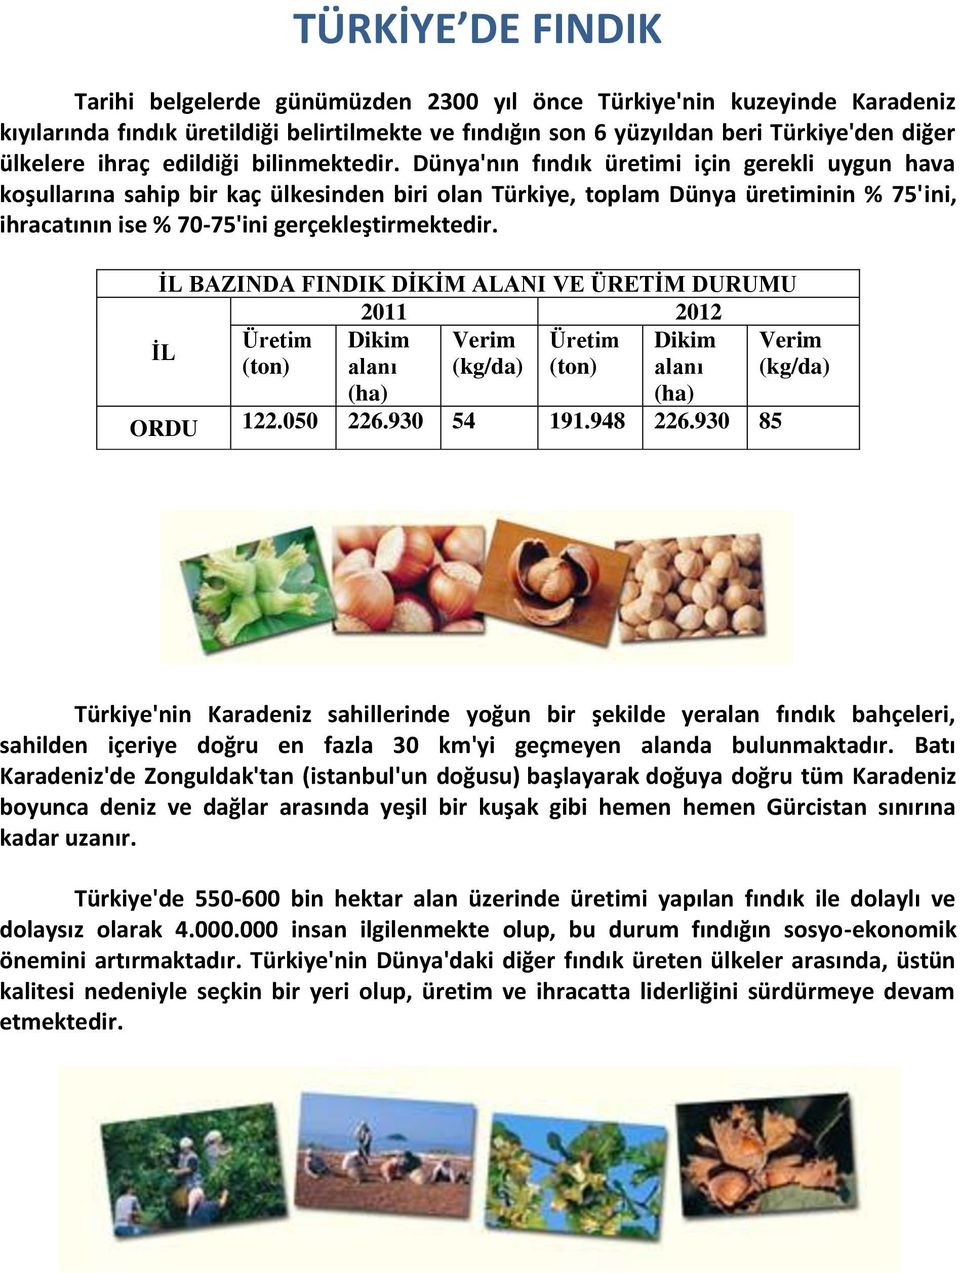 Dünya'nın fındık üretimi için gerekli uygun hava koşullarına sahip bir kaç ülkesinden biri olan Türkiye, toplam Dünya üretiminin % 75'ini, ihracatının ise % 70-75'ini gerçekleştirmektedir.